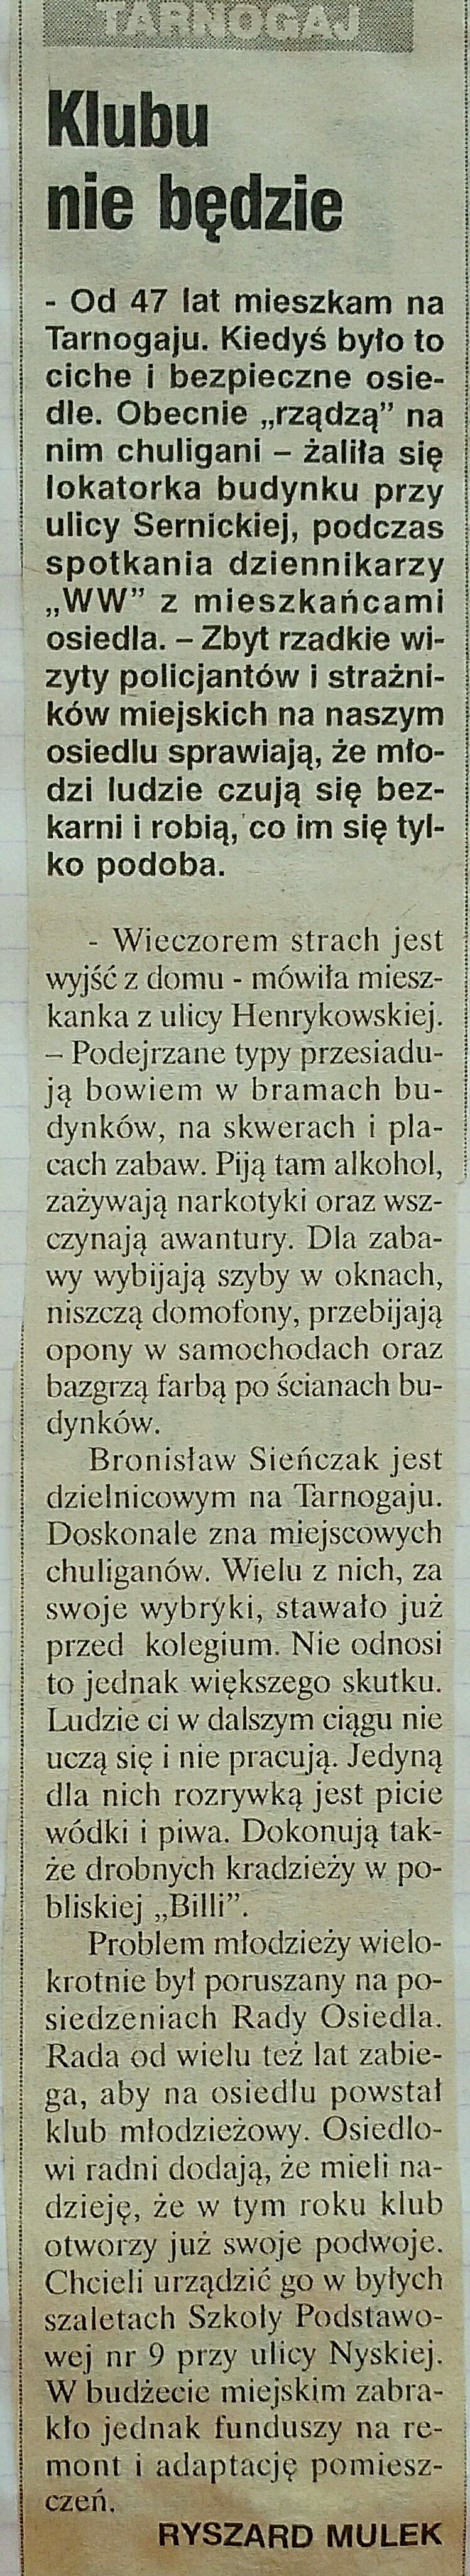 15 2000 maj 23 Wieczór Wrocławia